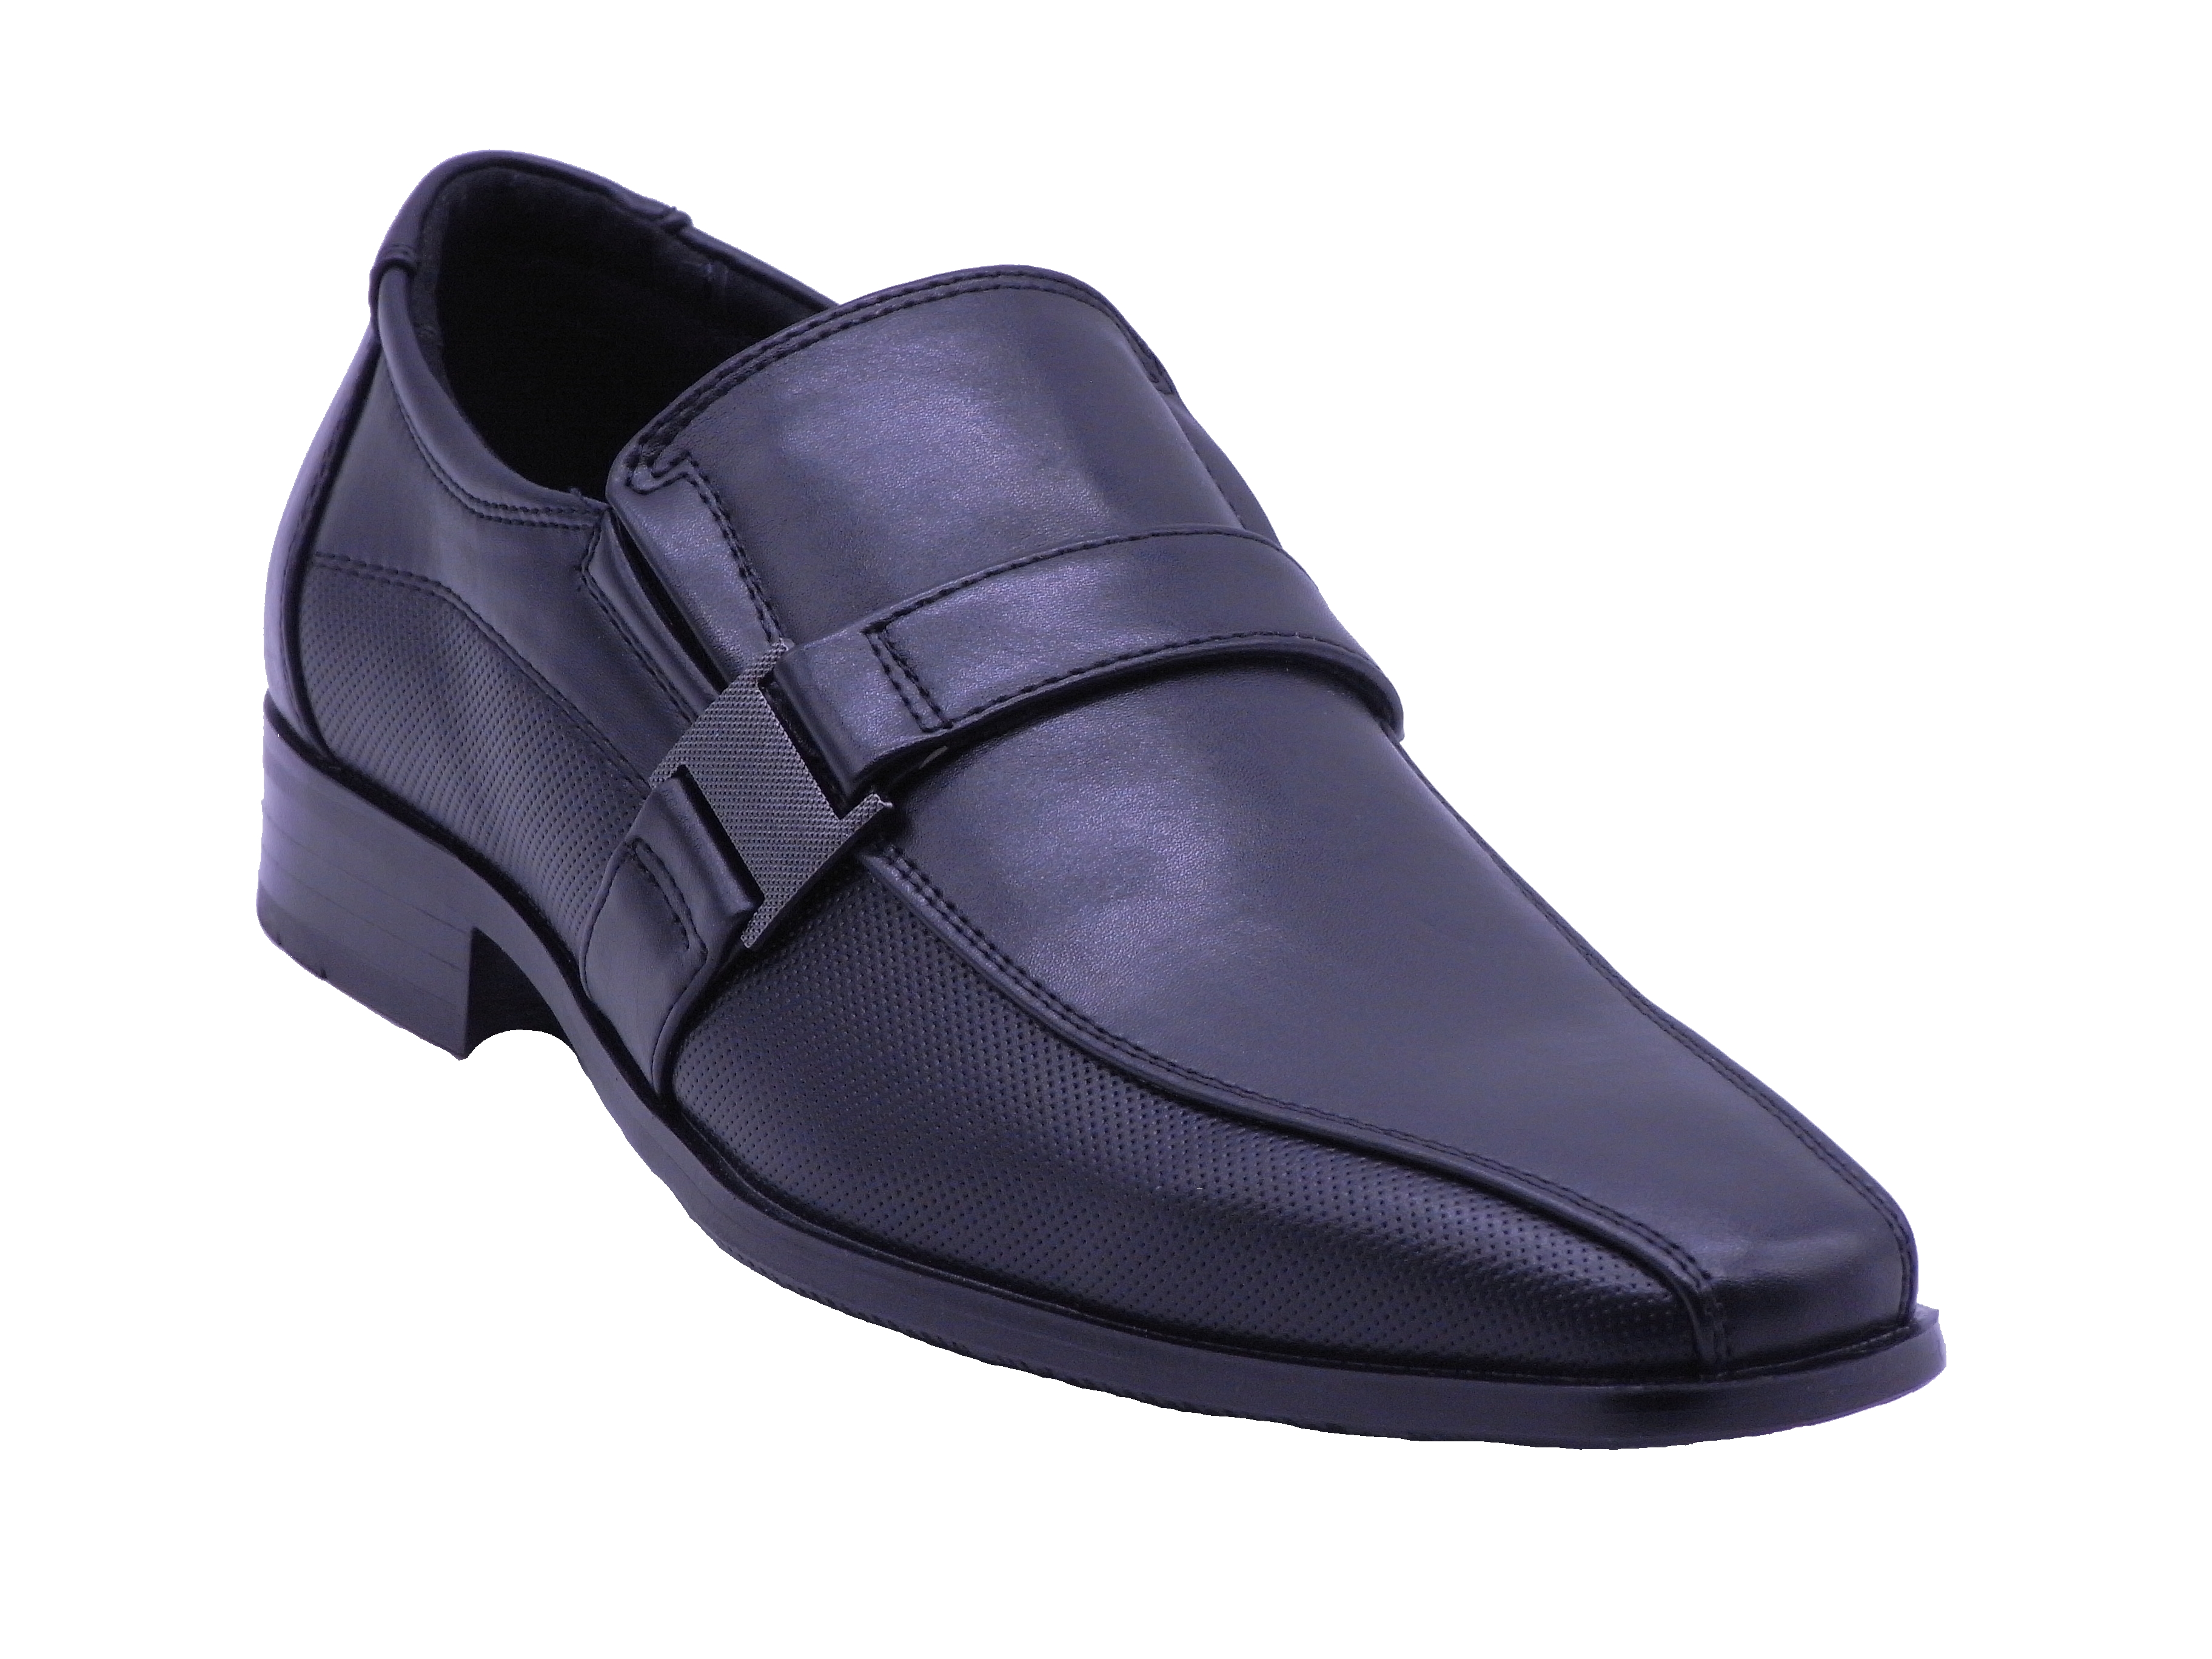 Men Shoes Slip On Strap Loafer Black Color Size US8 - image 1 of 5